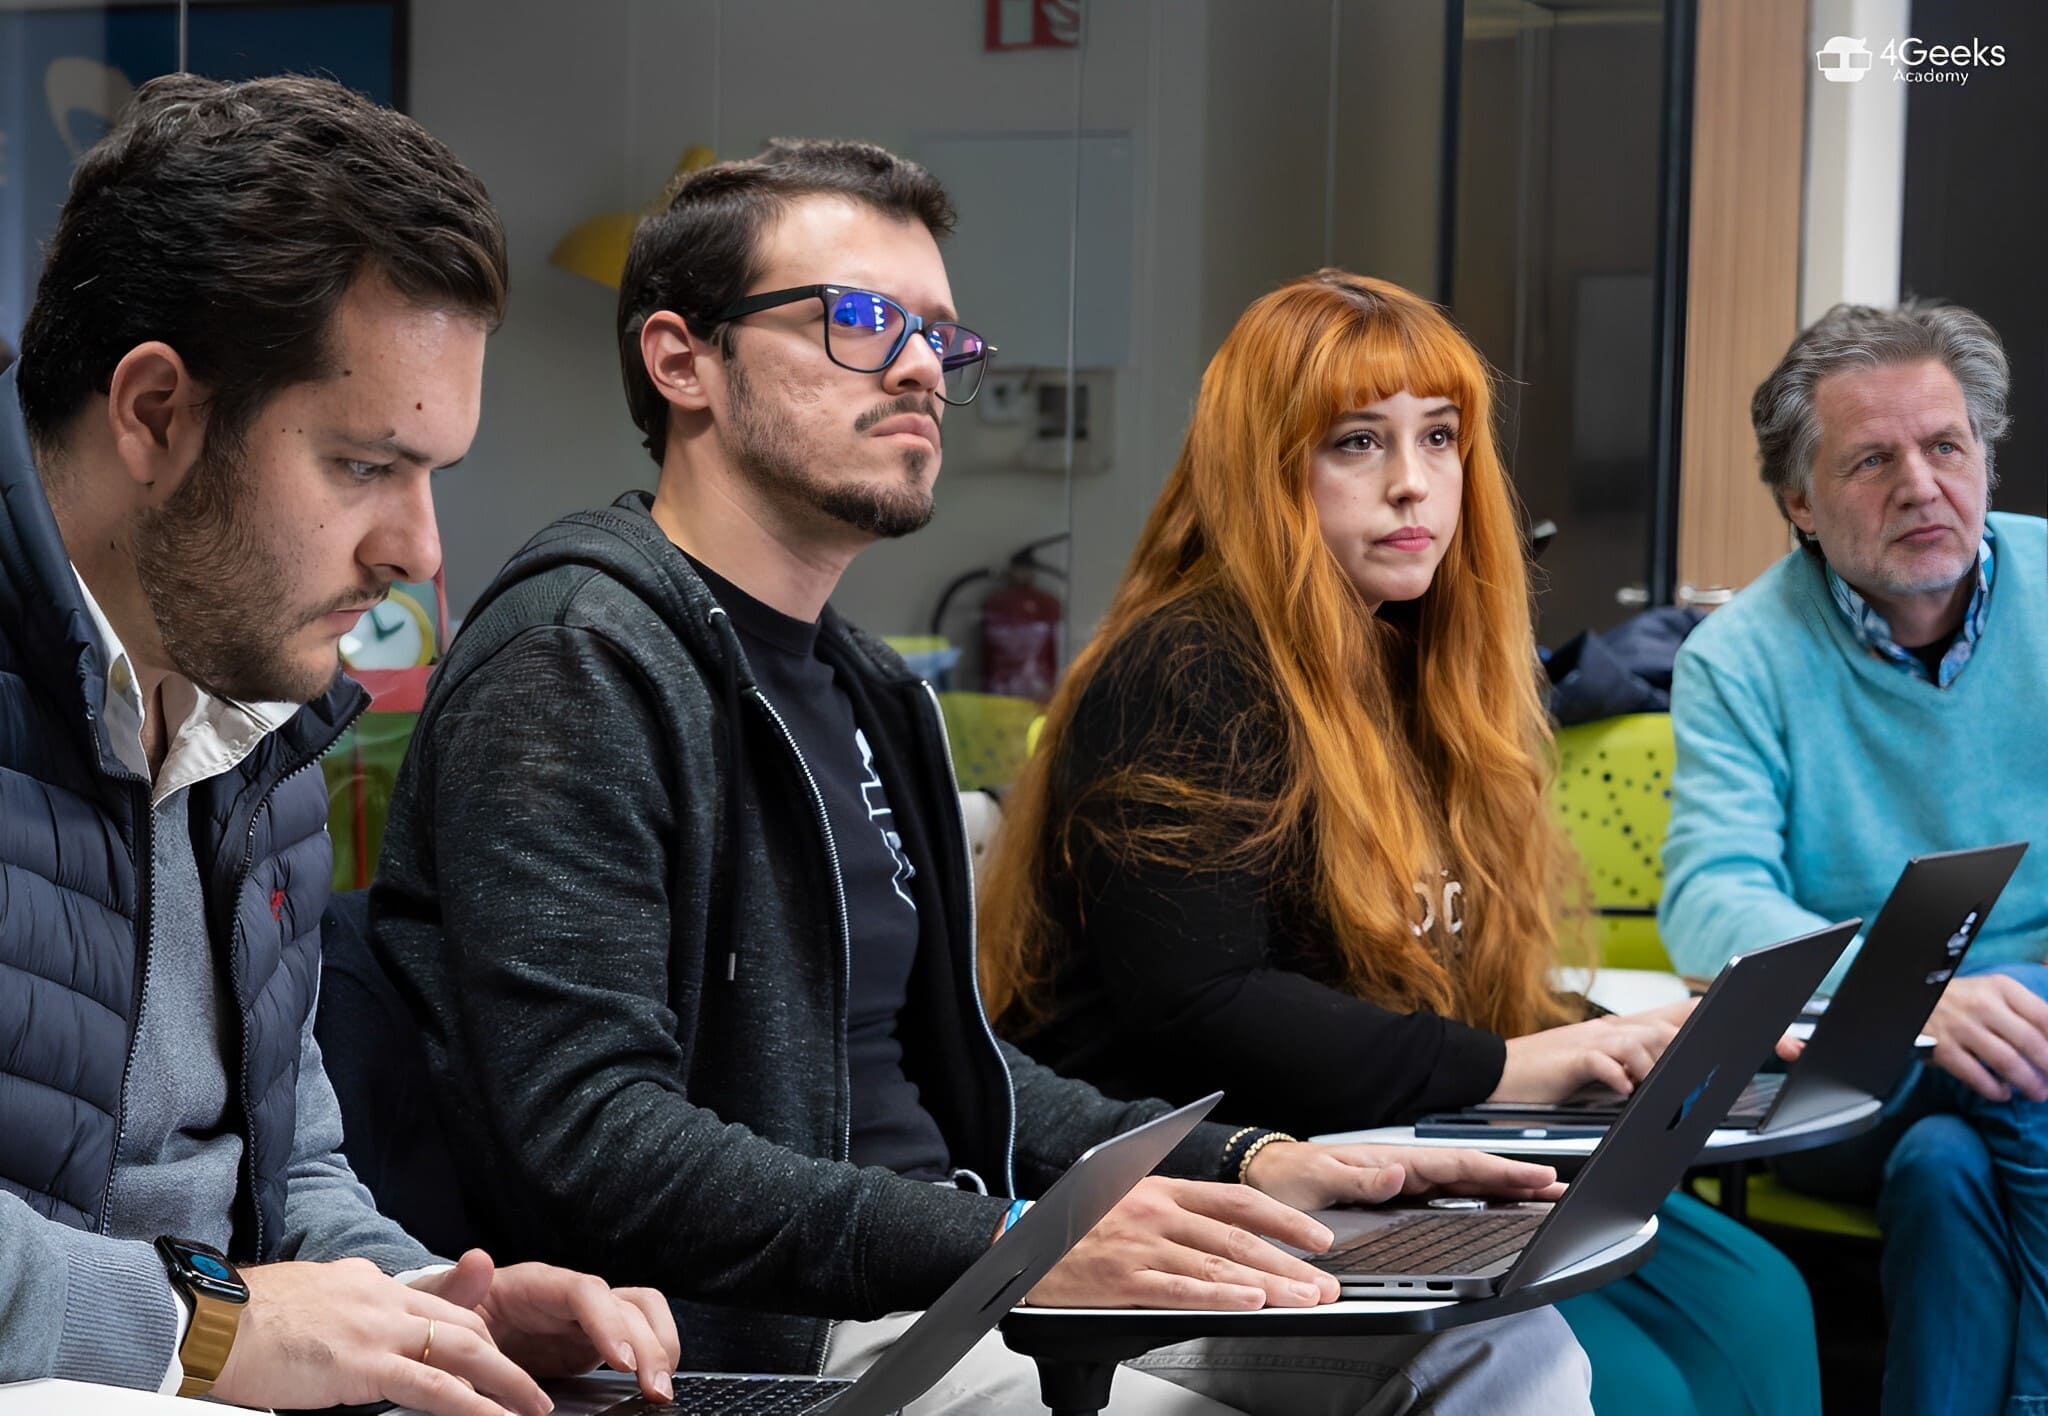 4Geeks Academy lanza bootcamp de ciberseguridad validado por Chema Alonso